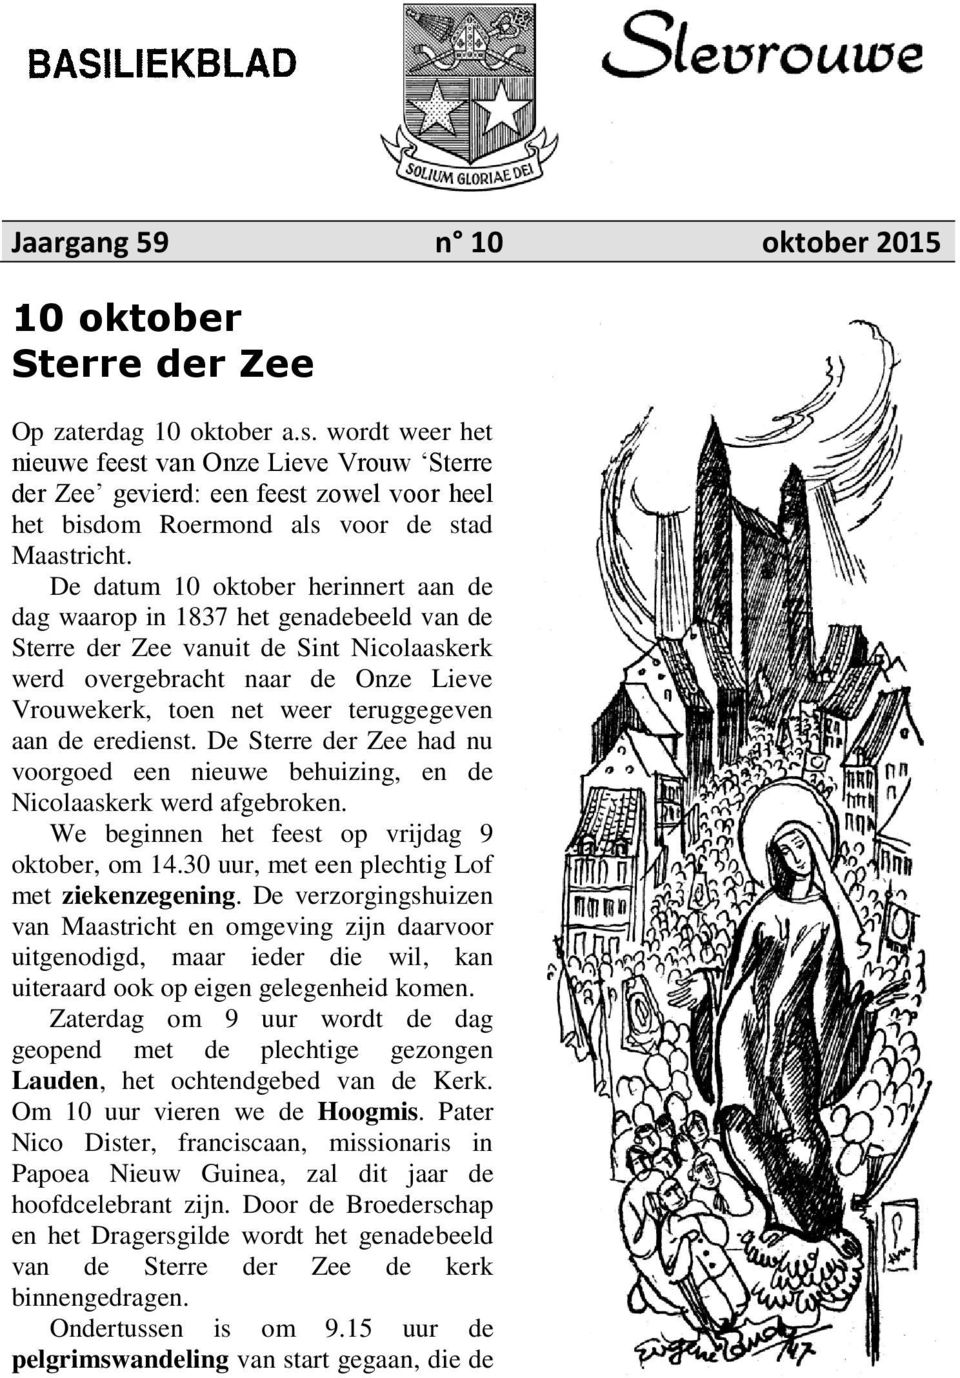 De datum 10 oktober herinnert aan de dag waarop in 1837 het genadebeeld van de Sterre der Zee vanuit de Sint Nicolaaskerk werd overgebracht naar de Onze Lieve Vrouwekerk, toen net weer teruggegeven